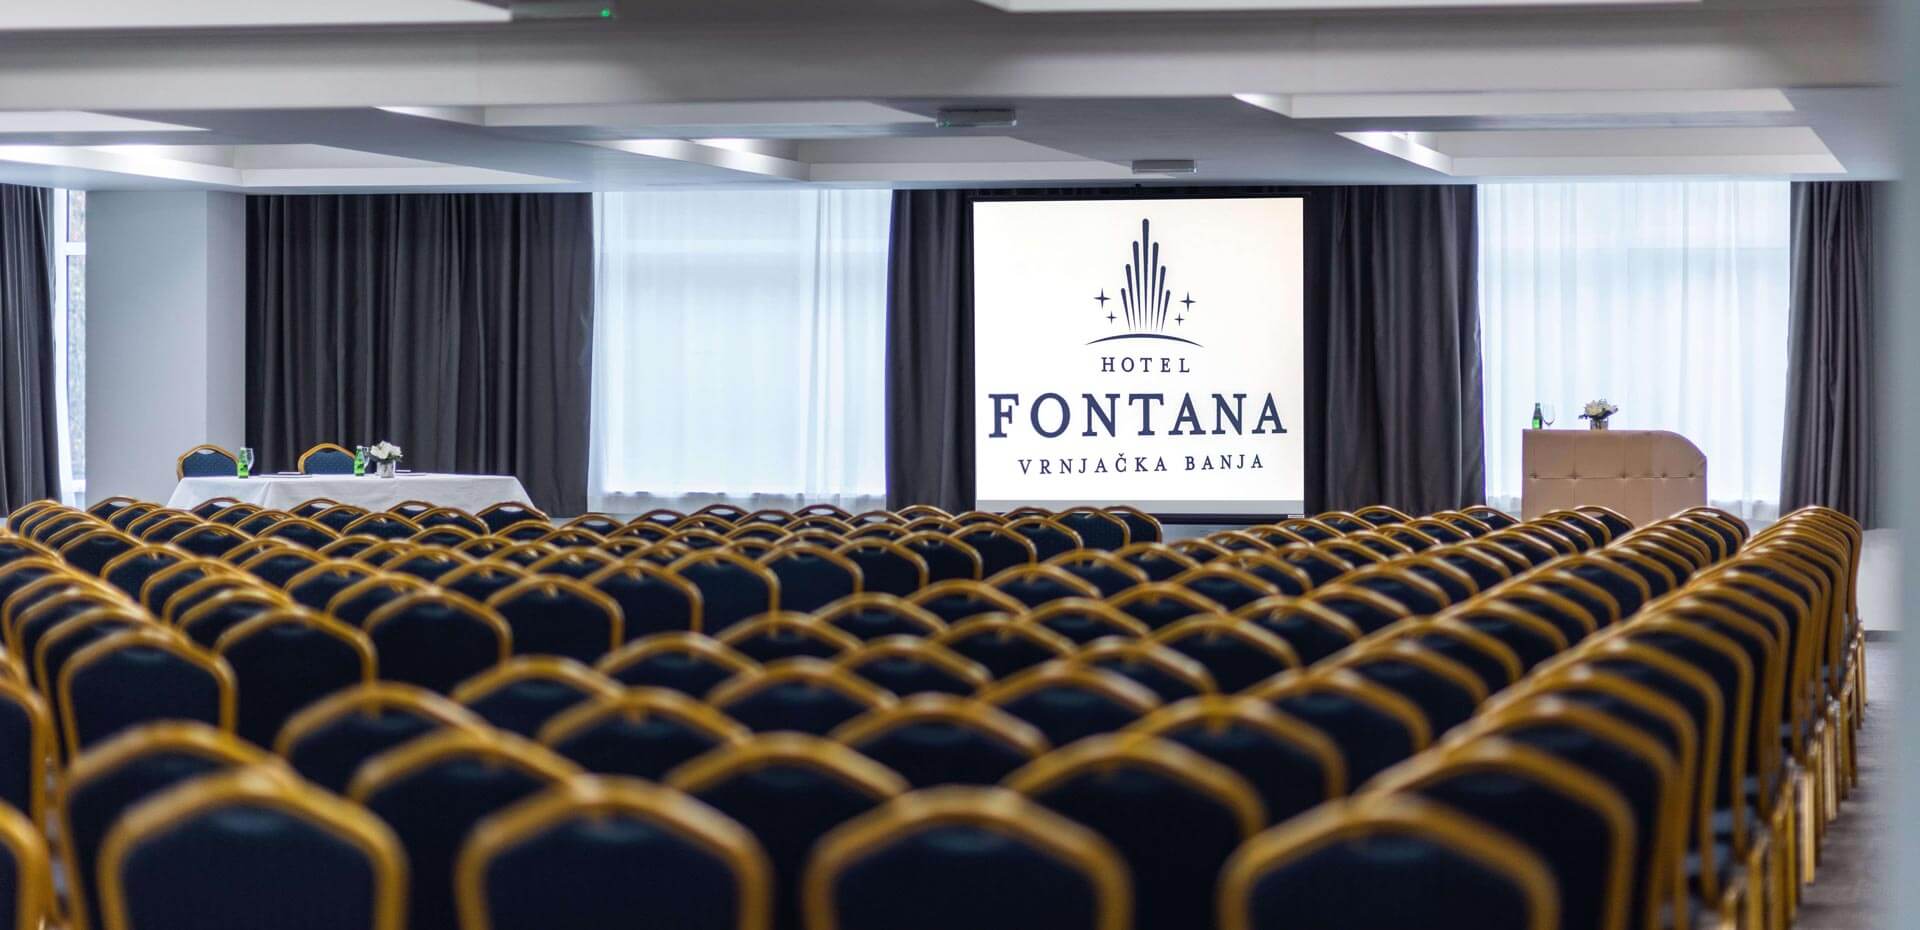 Kongresna sala hotela Fontana